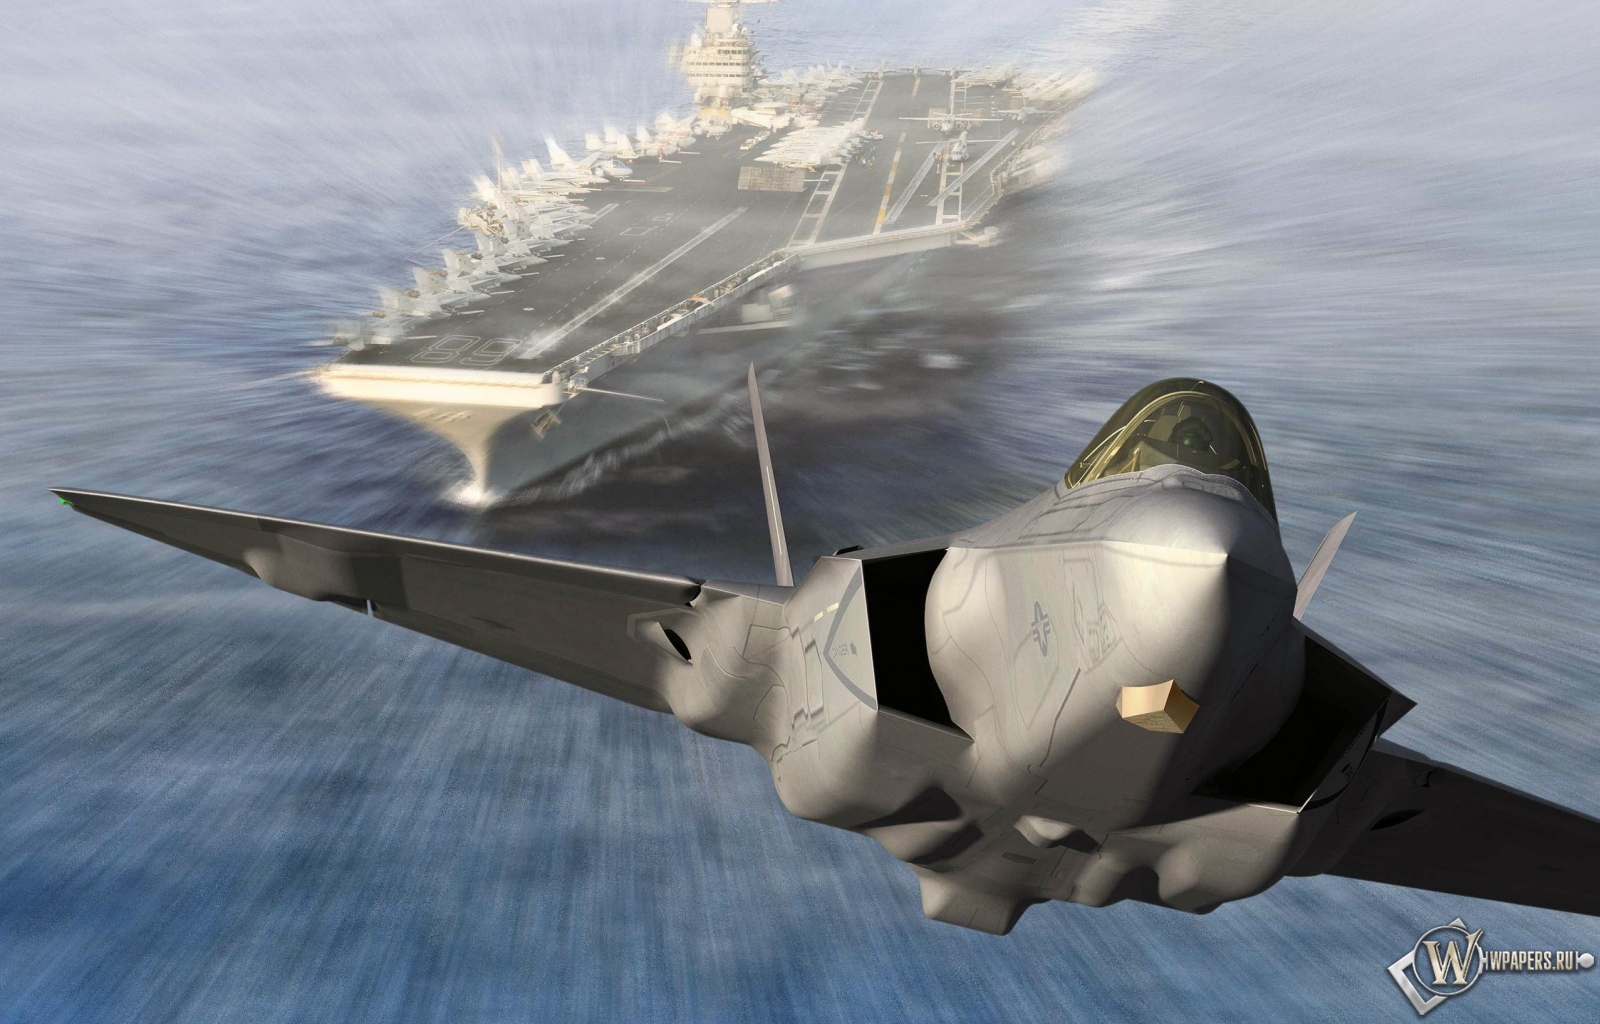 Запуск Lockheed Martin F-35C Lightning II из авианосца 1600x1024